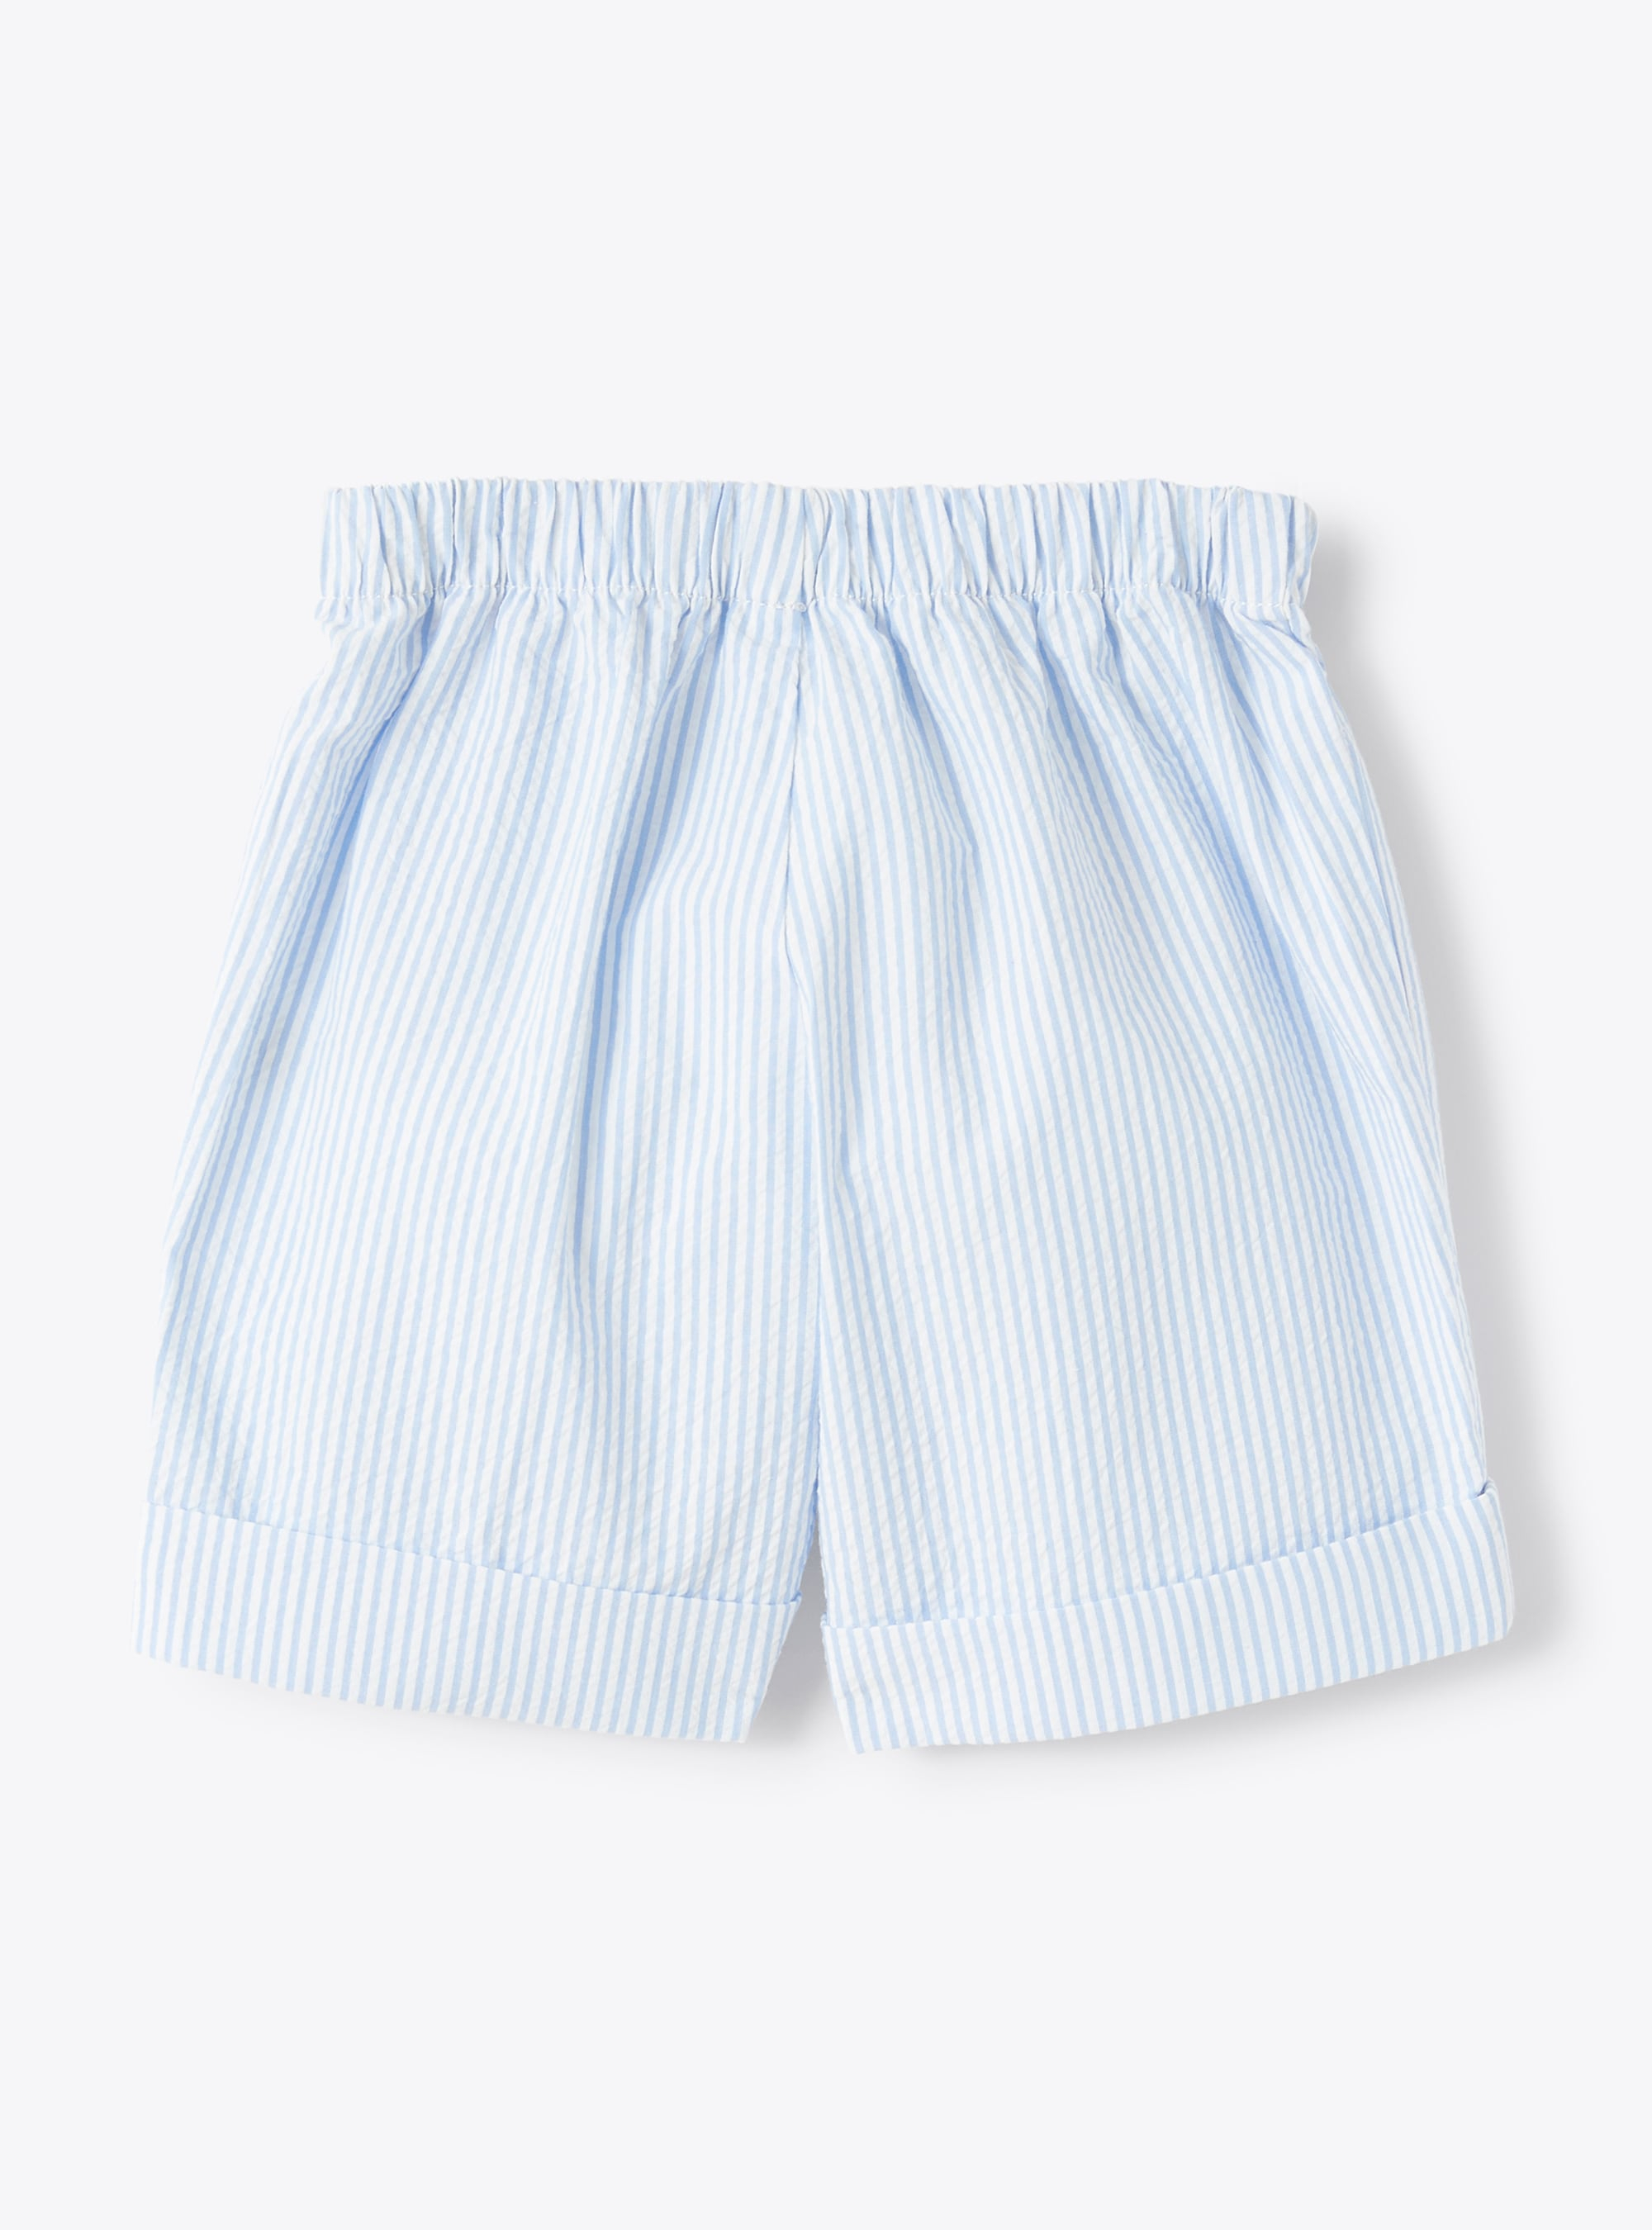 Bermuda shorts in blue-stripe seersucker - Light blue | Il Gufo